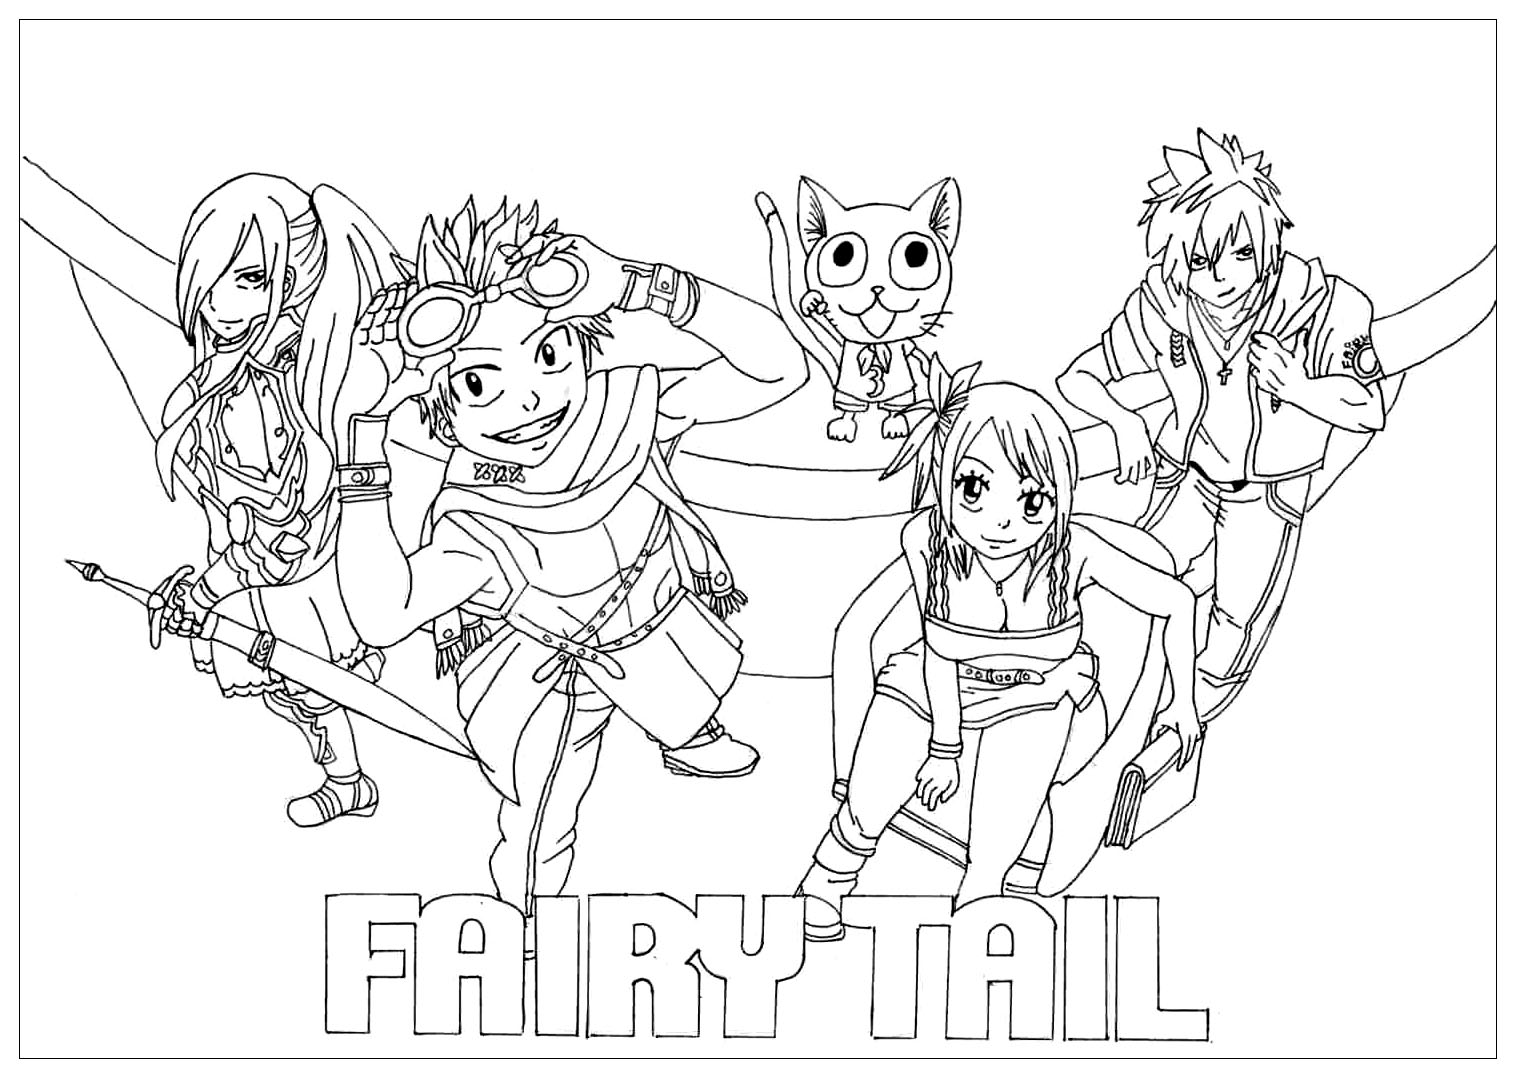 Coloriage de Fairy tail pour enfants   Coloriage Fairy tail ...